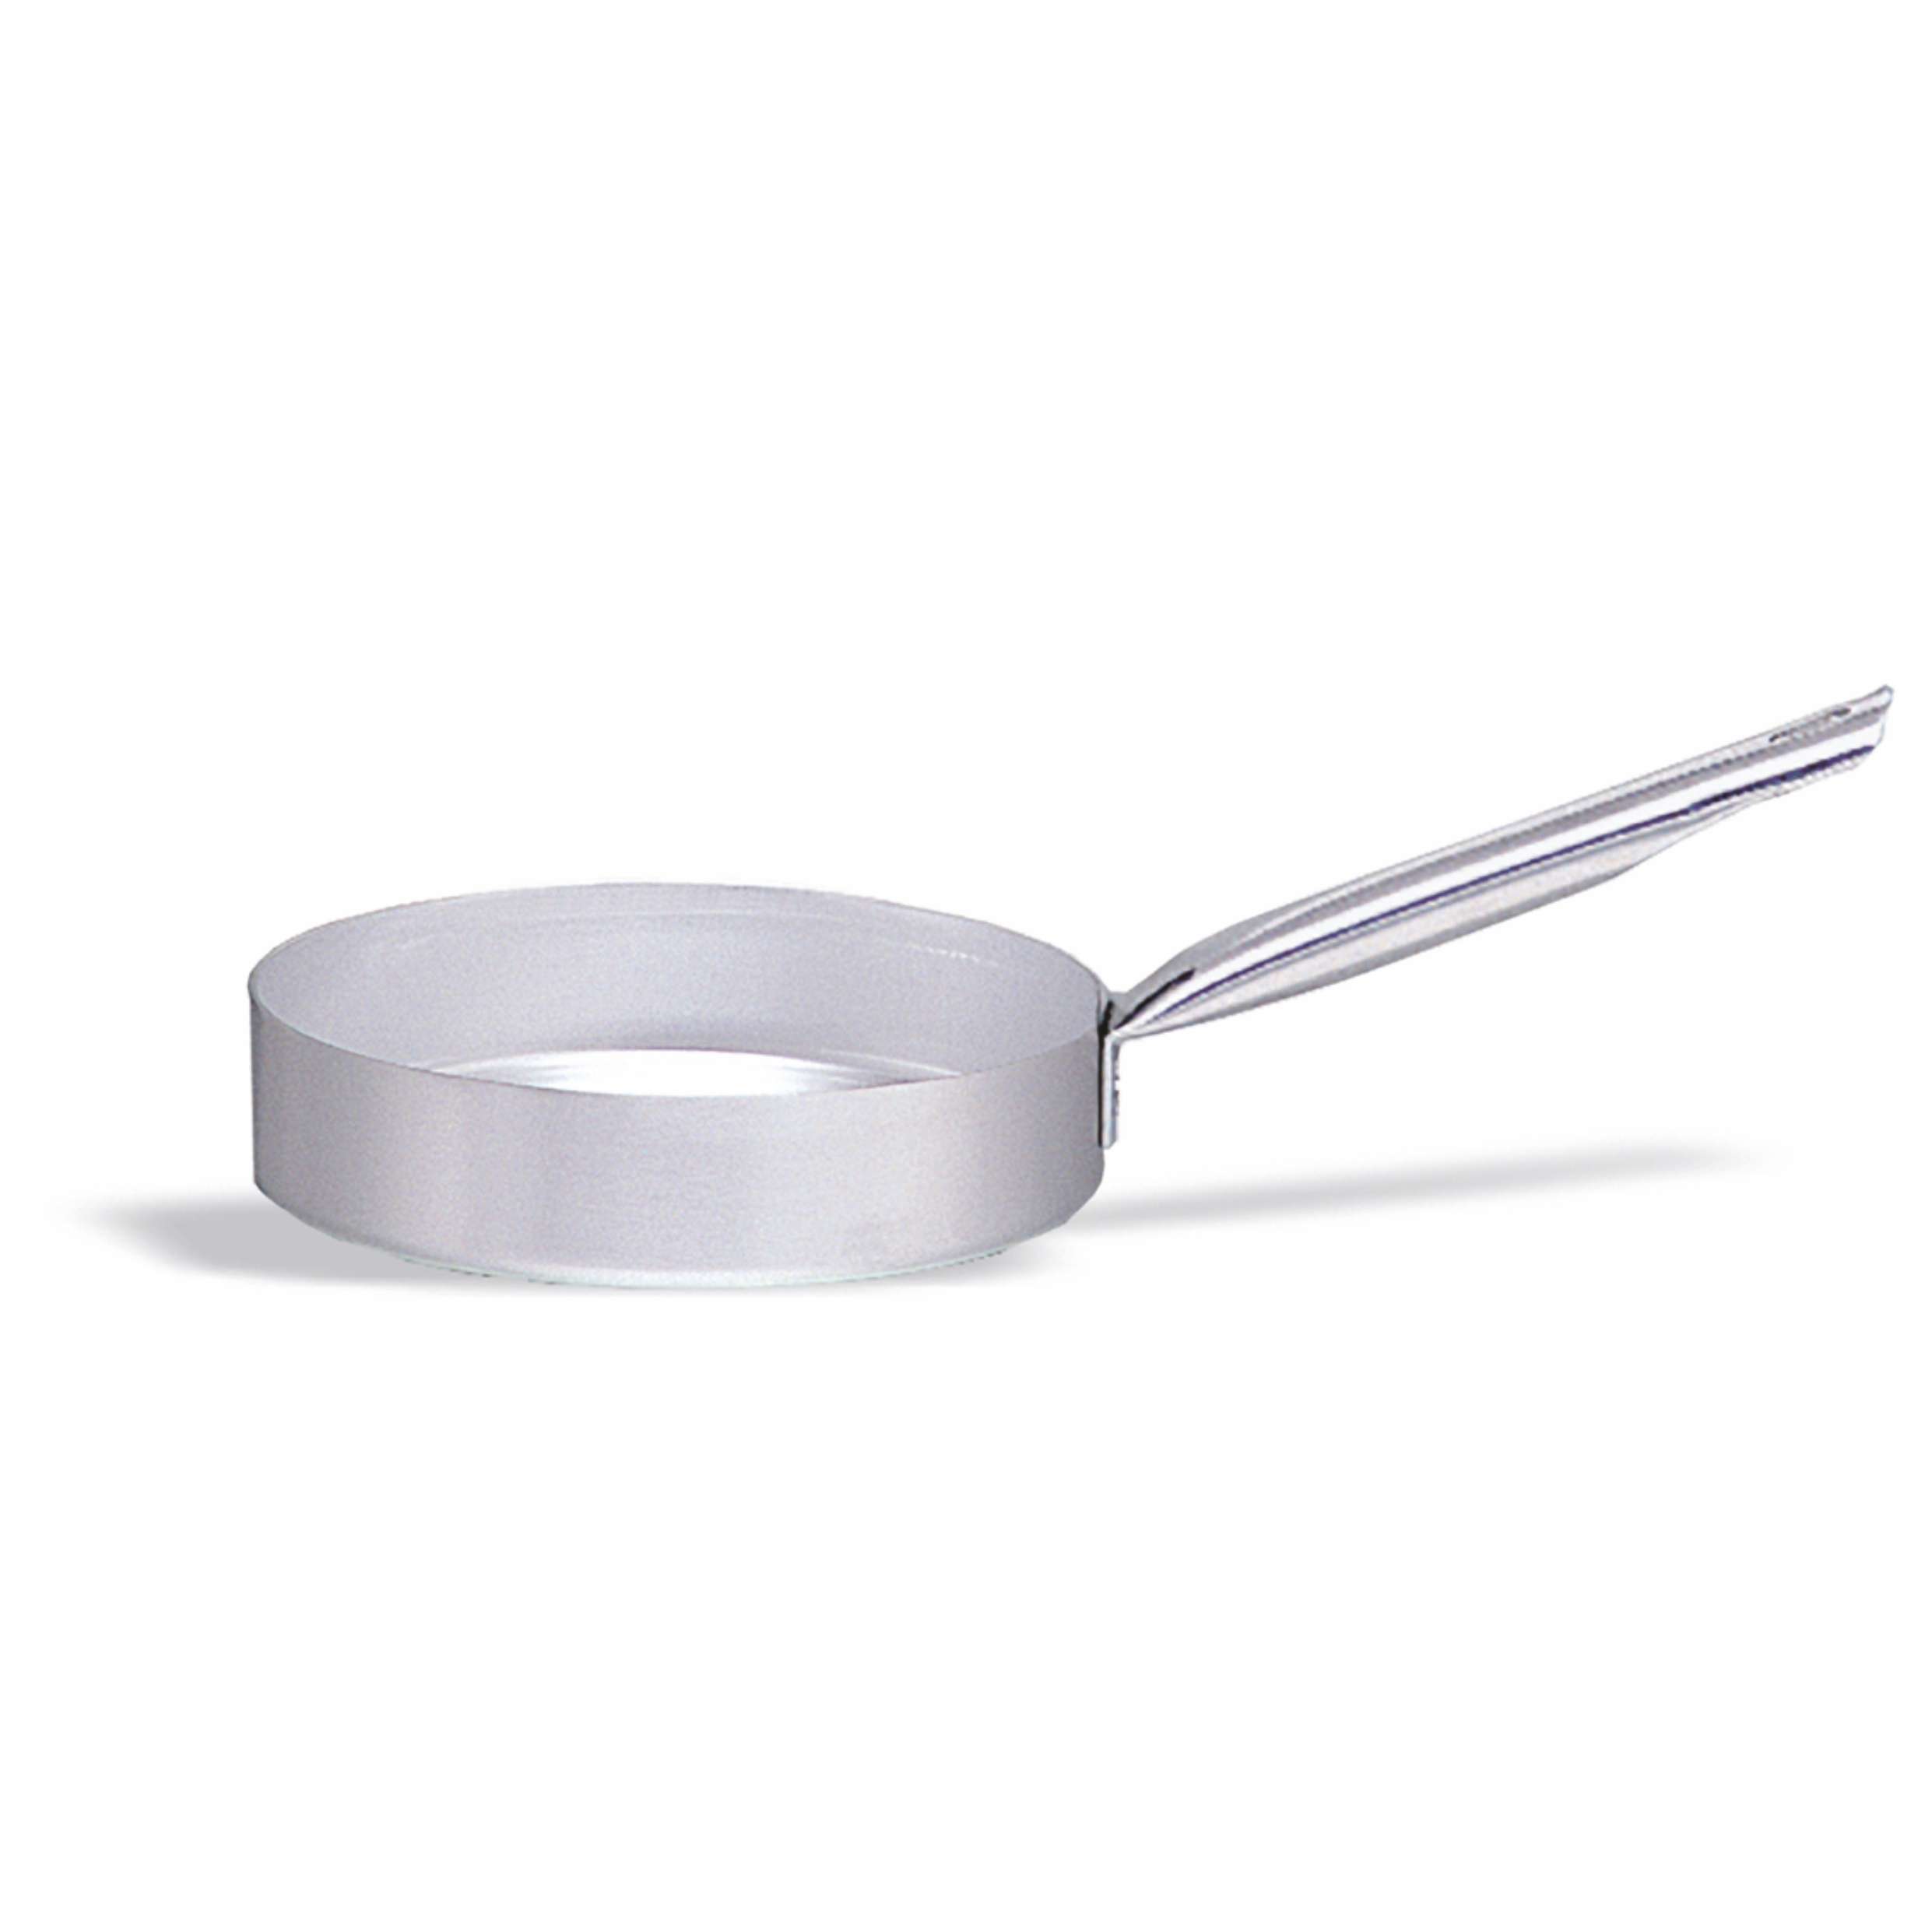 Casseruola in alluminio con manico – diametro 28 cm – 3,75 litri